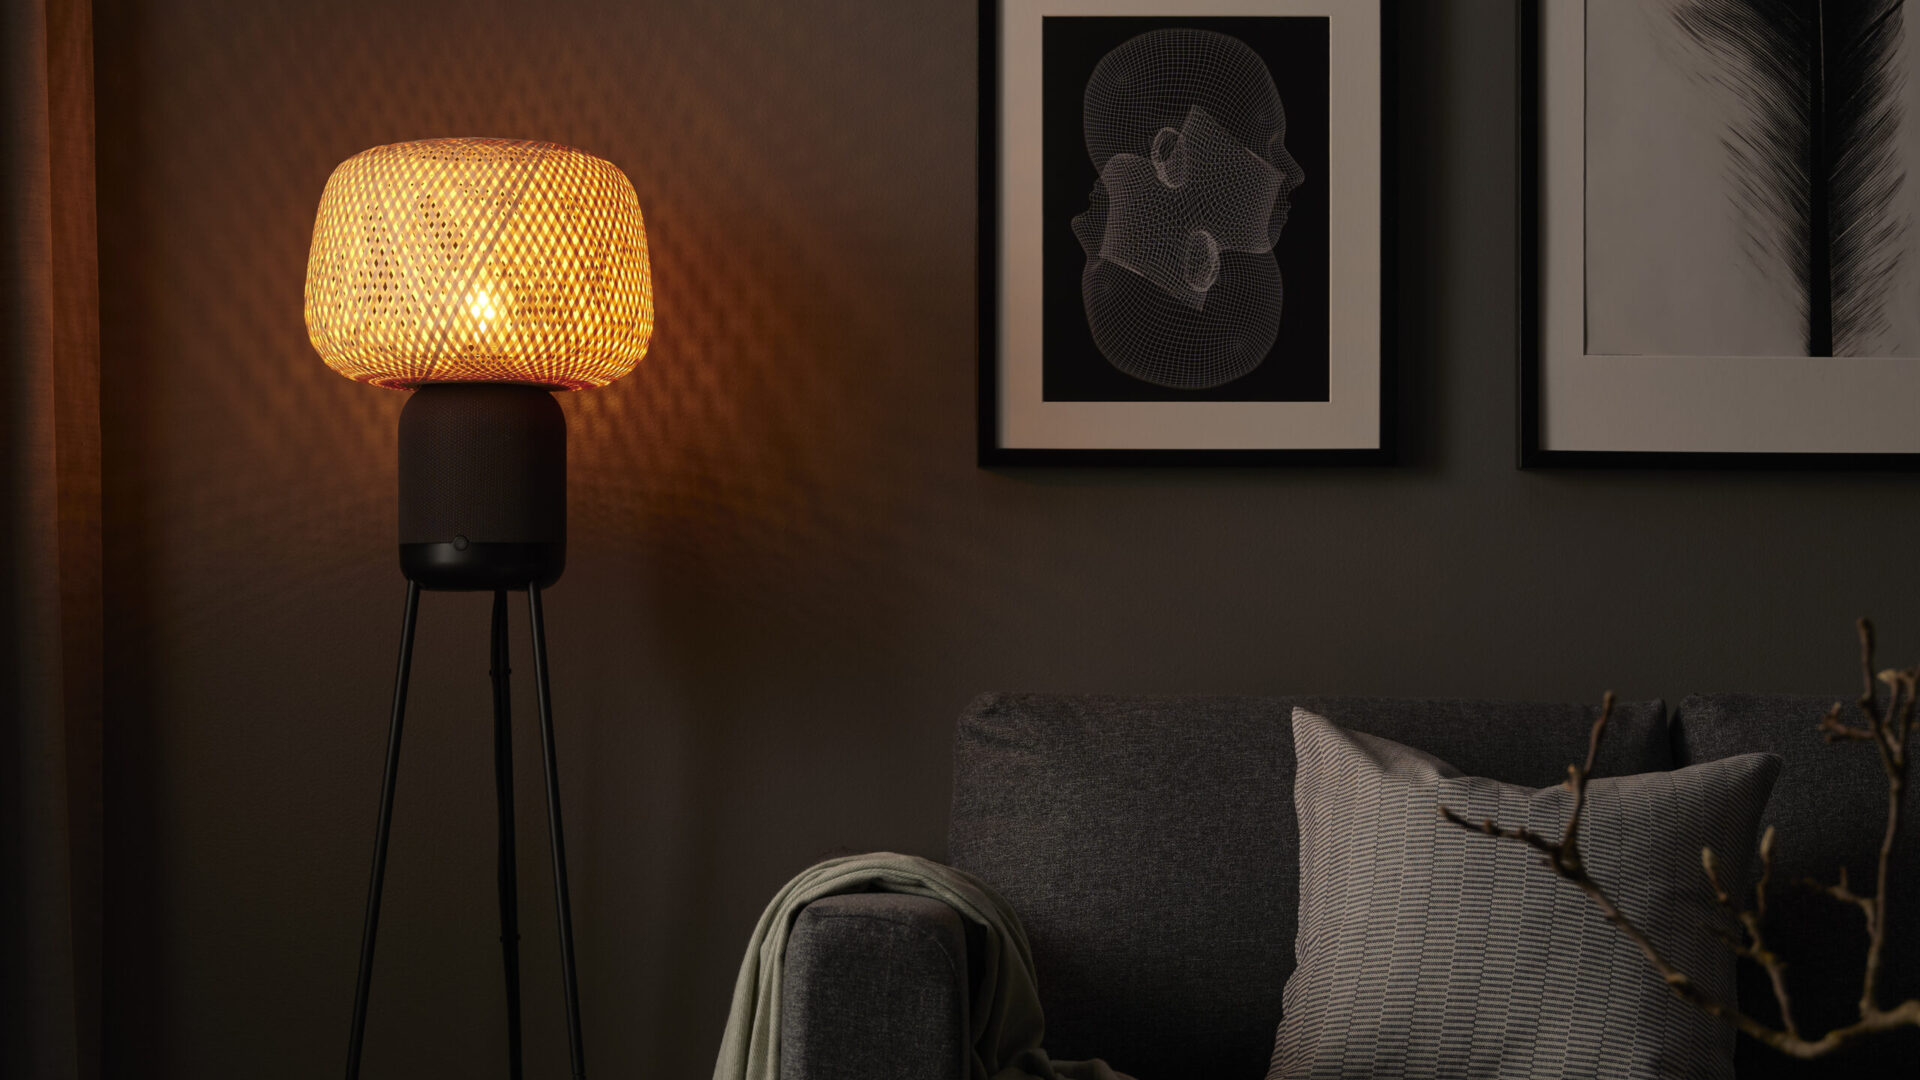 SYMFONISK: IKEA og Sonos lanserer ny gulvlampehøyttaler